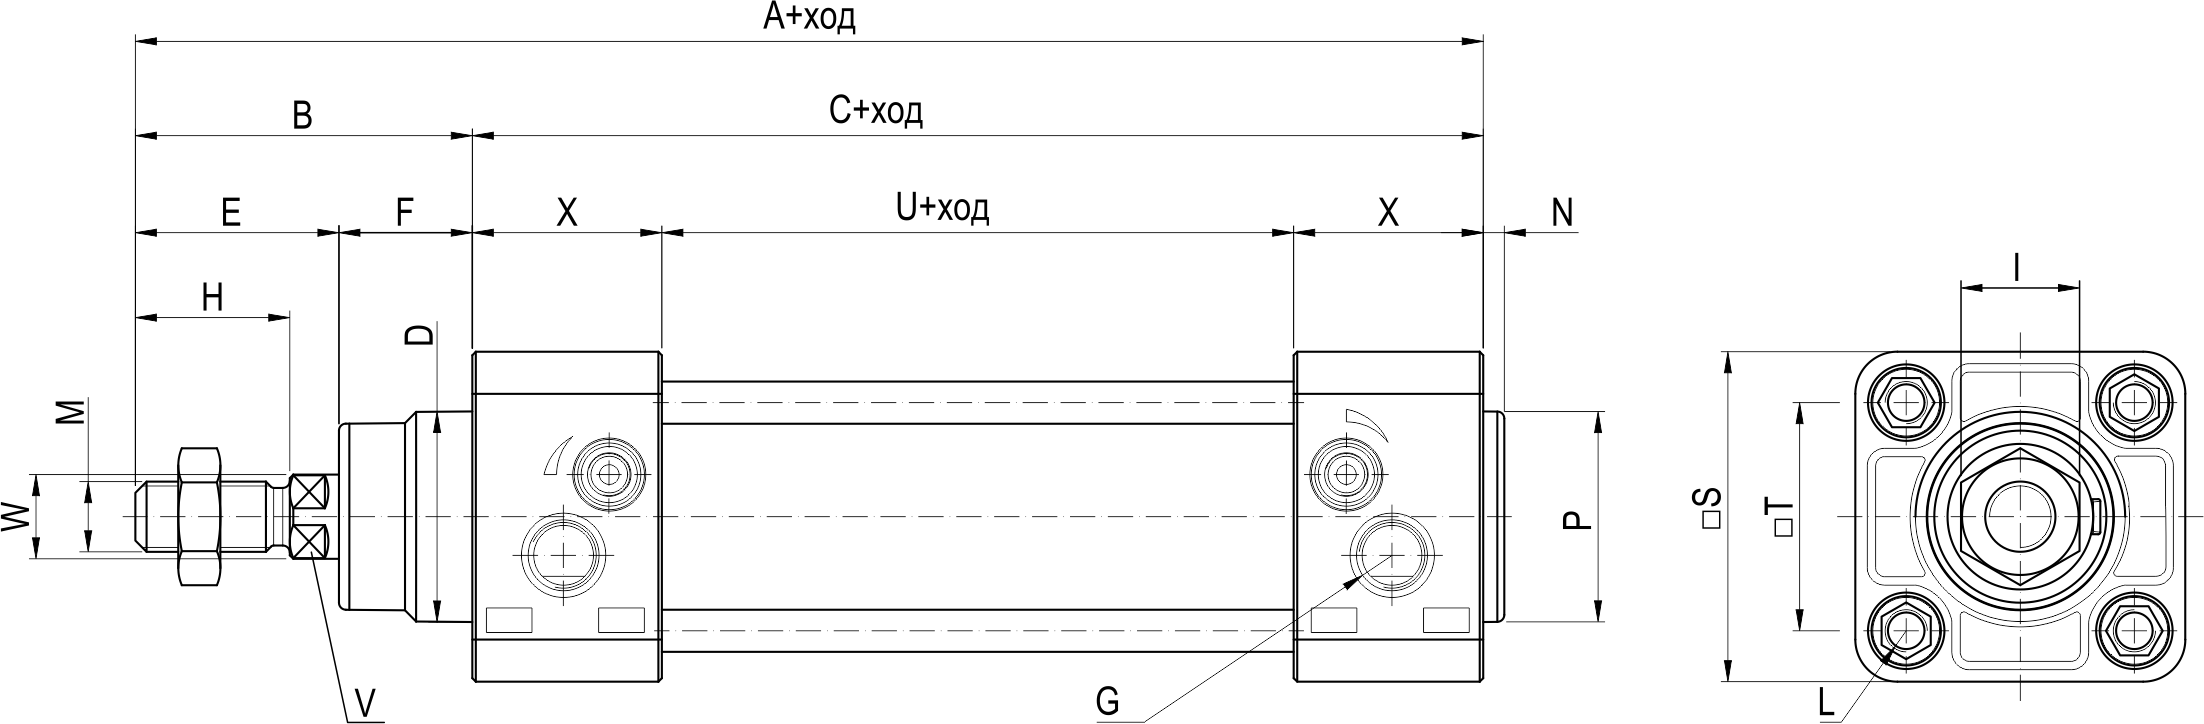 Структура условного обозначения пневмоцилиндров KIPVALVE серии KVNG